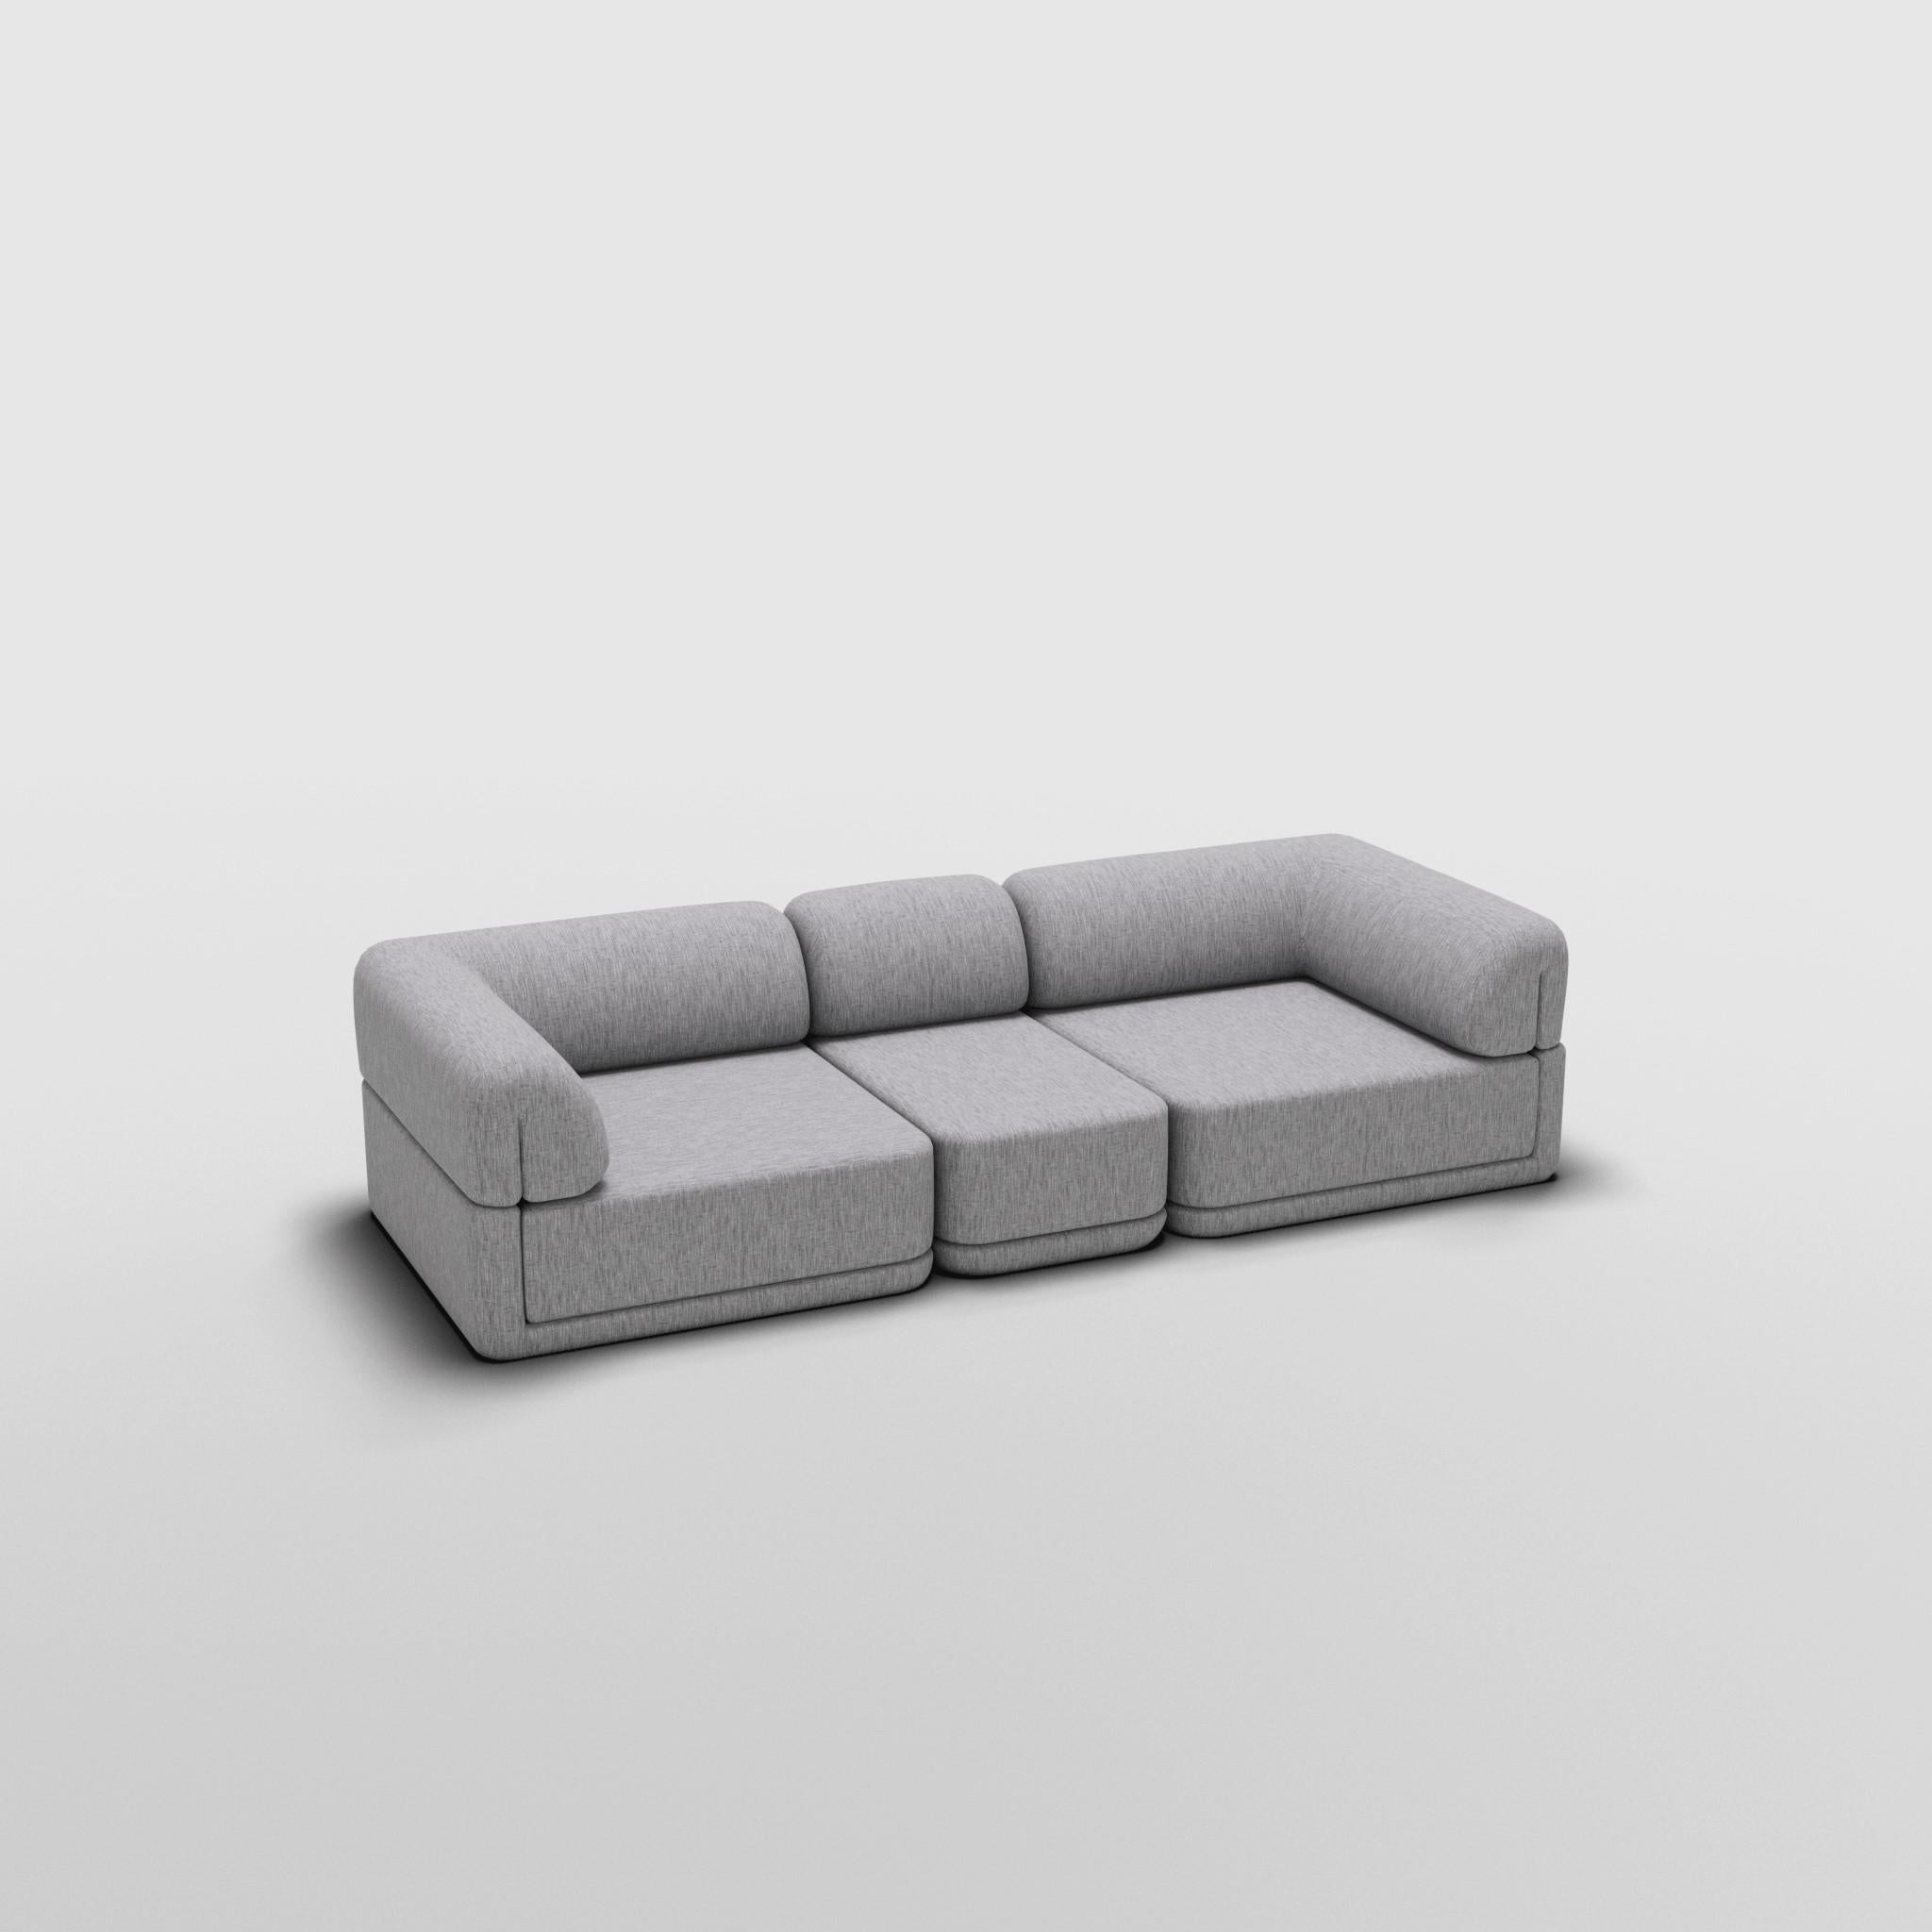 Contemporary The Cube Sofa - Sofa Slim Set For Sale